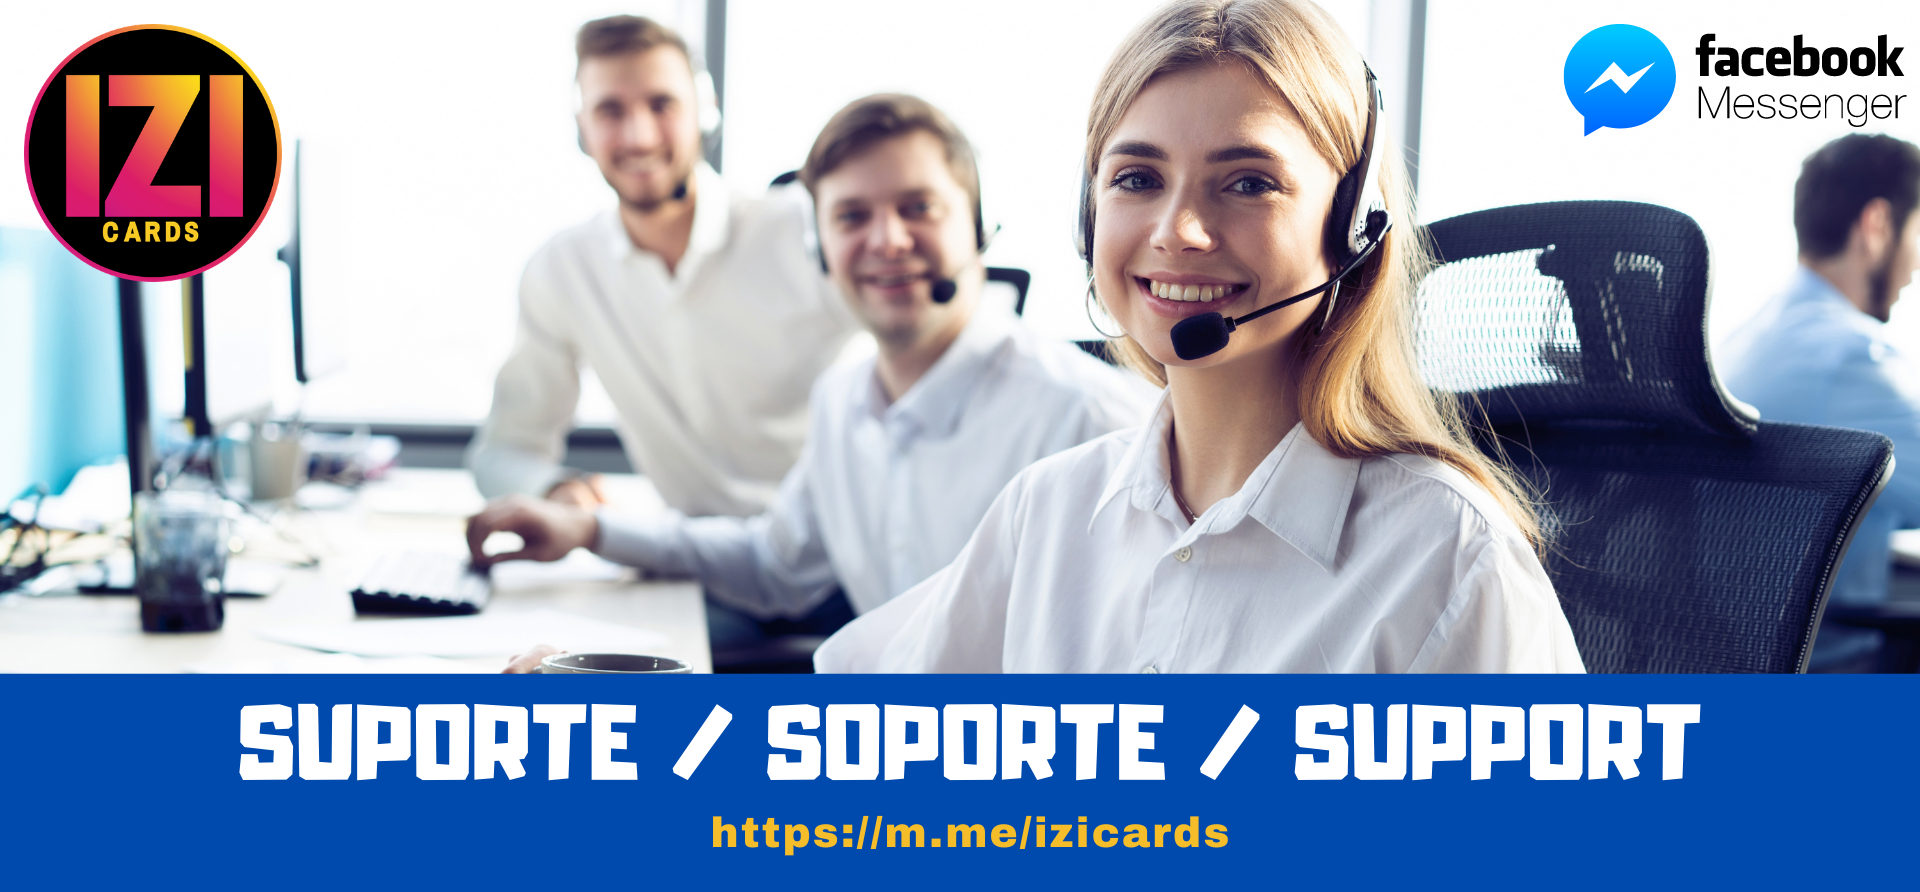 Suporte / Soporte / Support